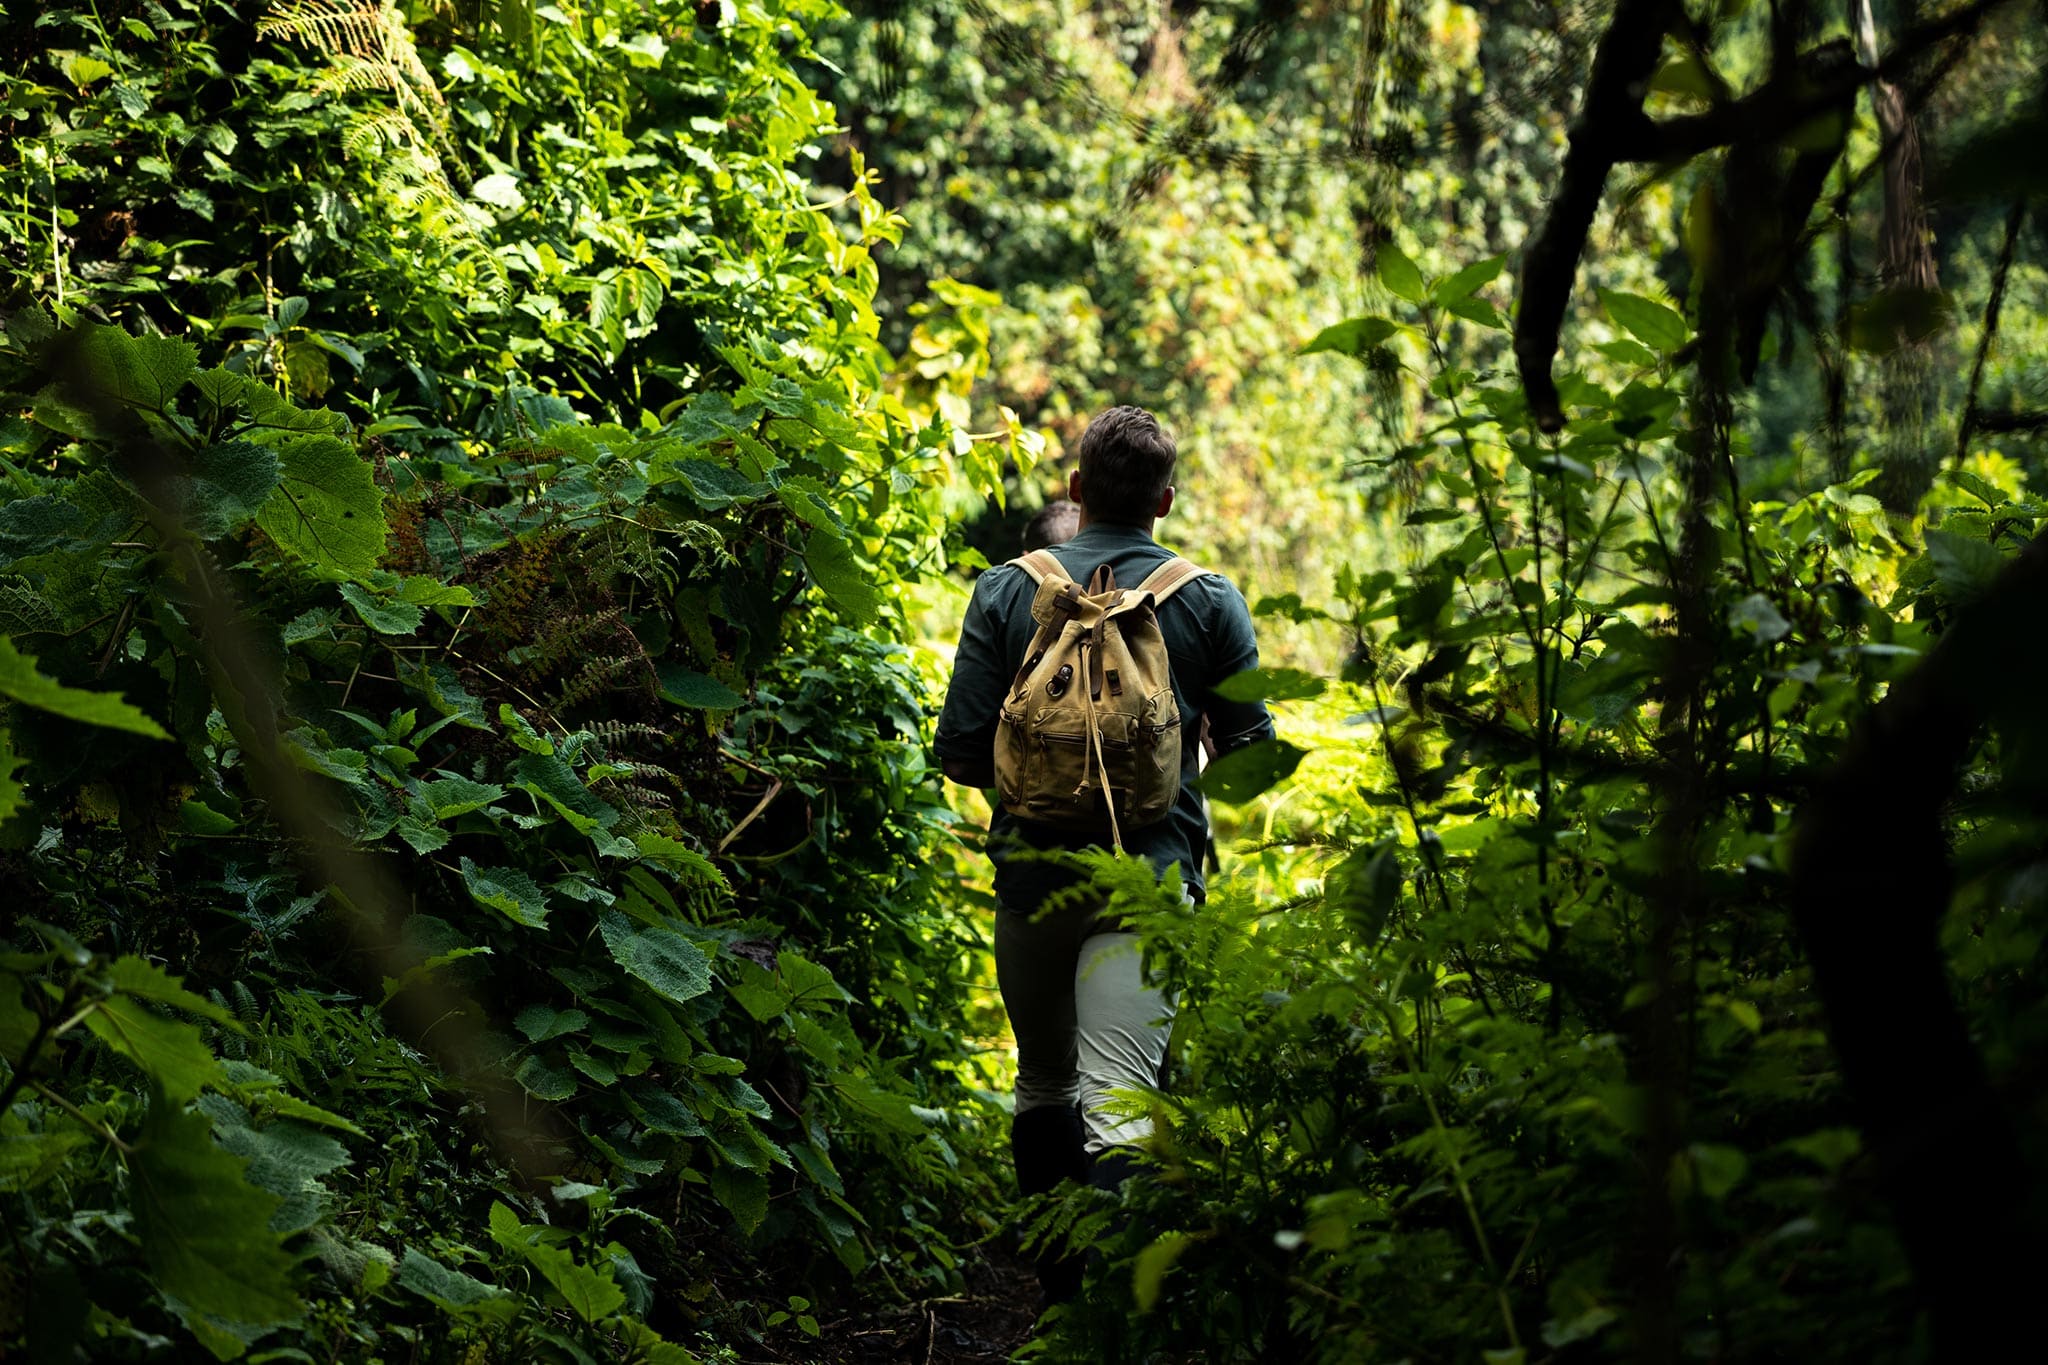 Adventure through the rainforests of Rwanda